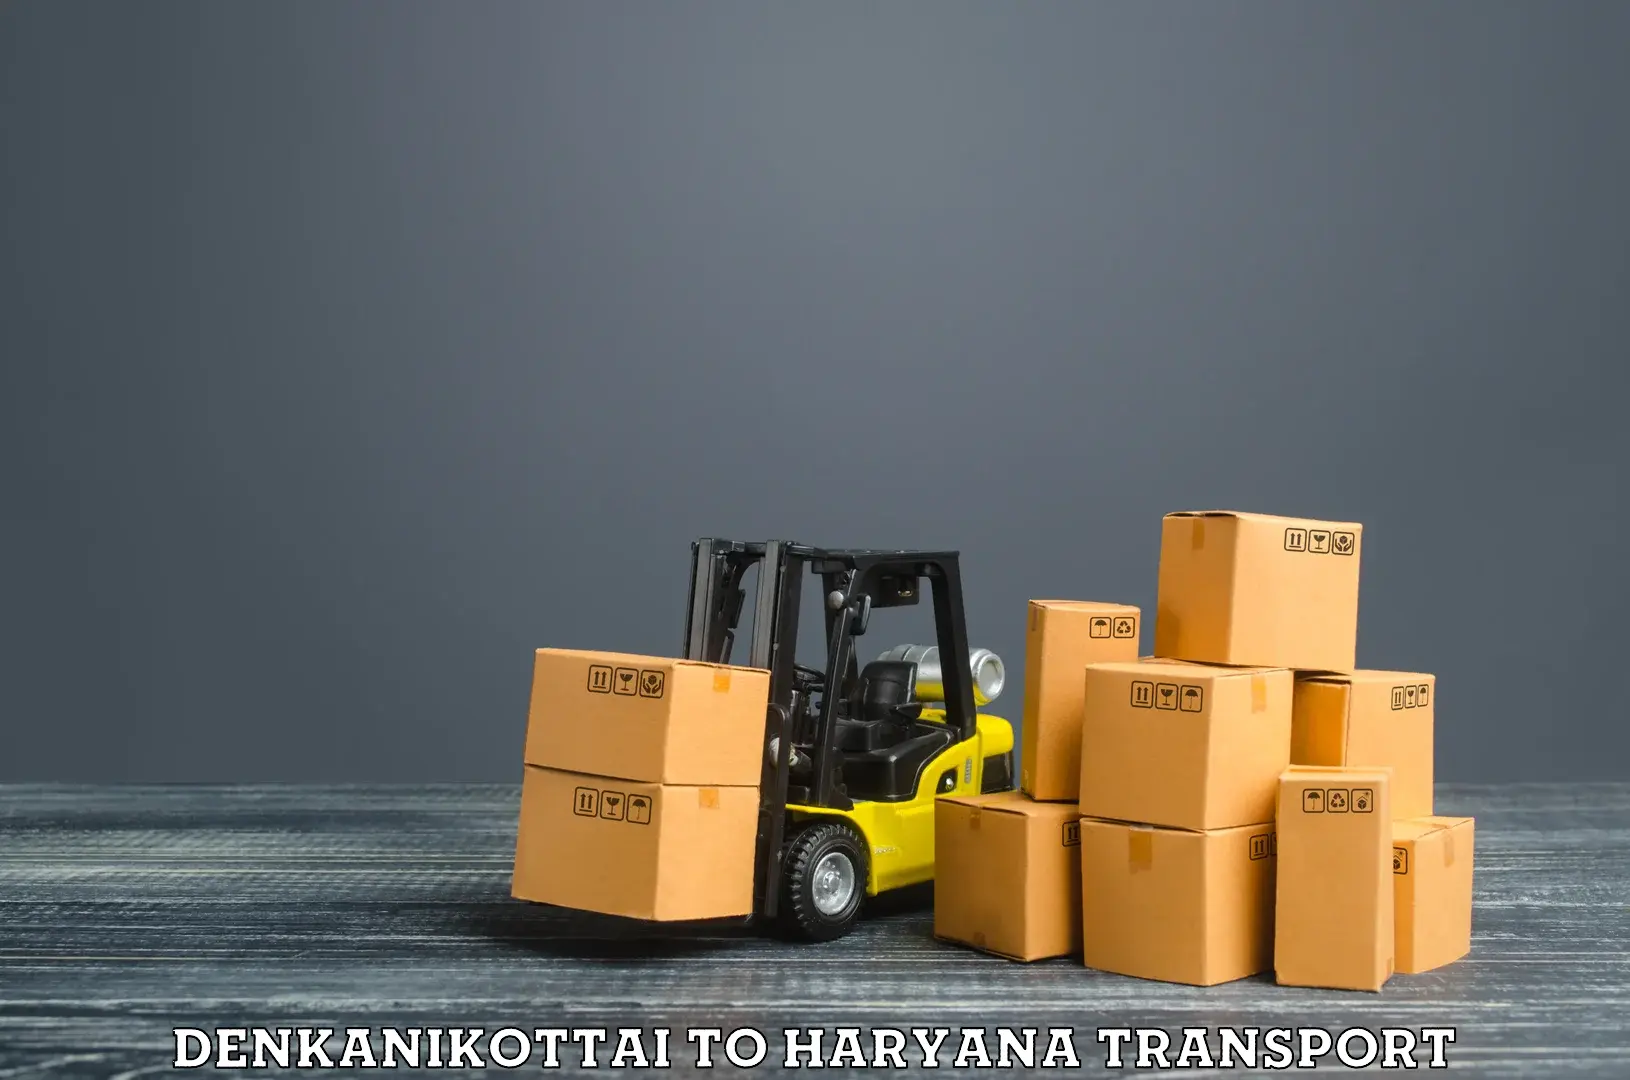 Cargo transportation services Denkanikottai to Charkhi Dadri